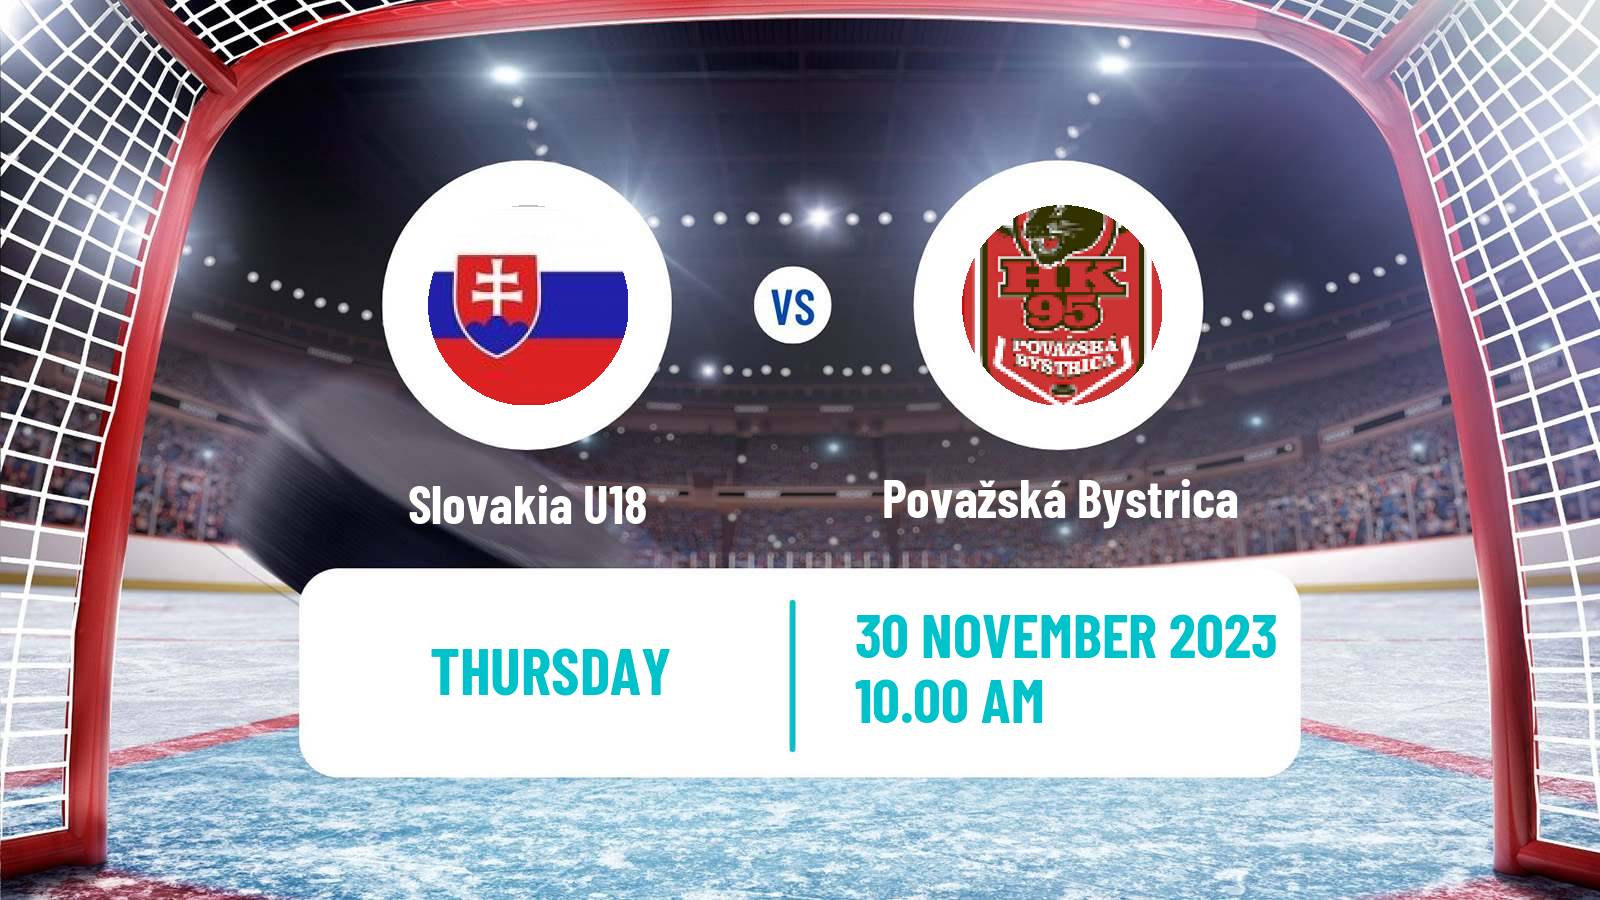 Hockey Slovak 1 Liga Hockey Slovakia U18 - Považská Bystrica